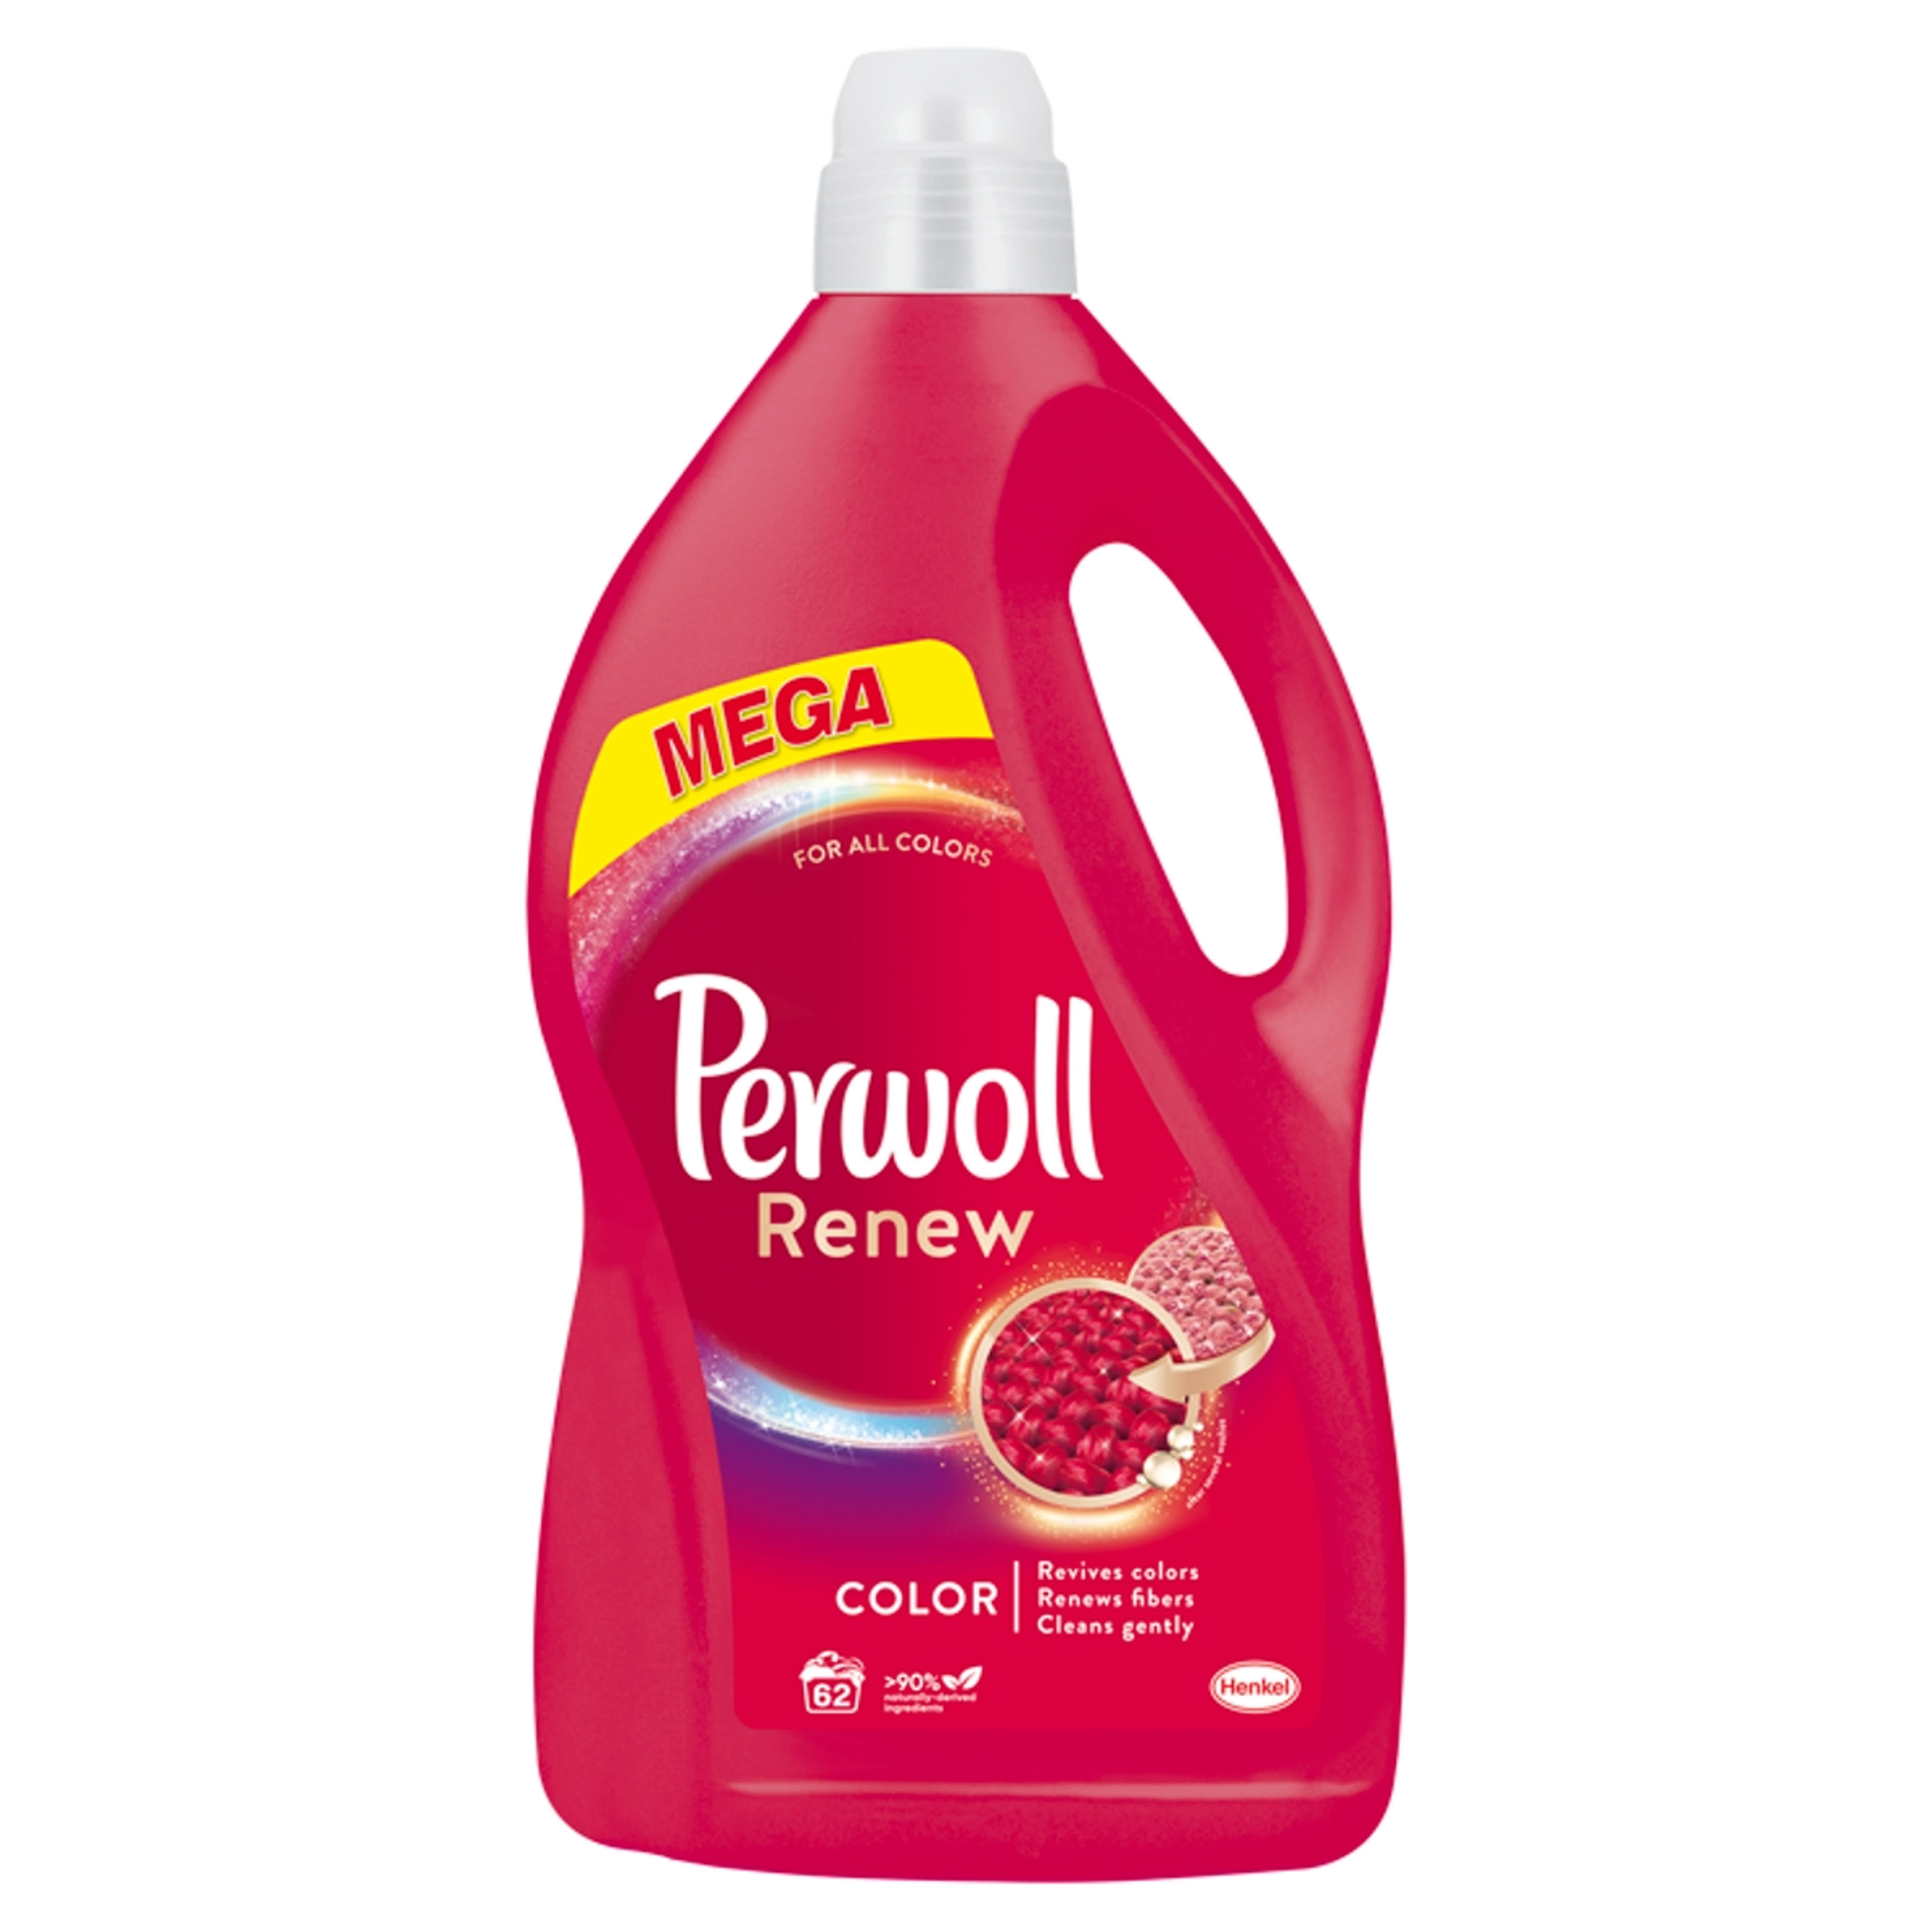 Perwoll Renew & Color folyékony mosószer, 62 mosás - 3720 ml